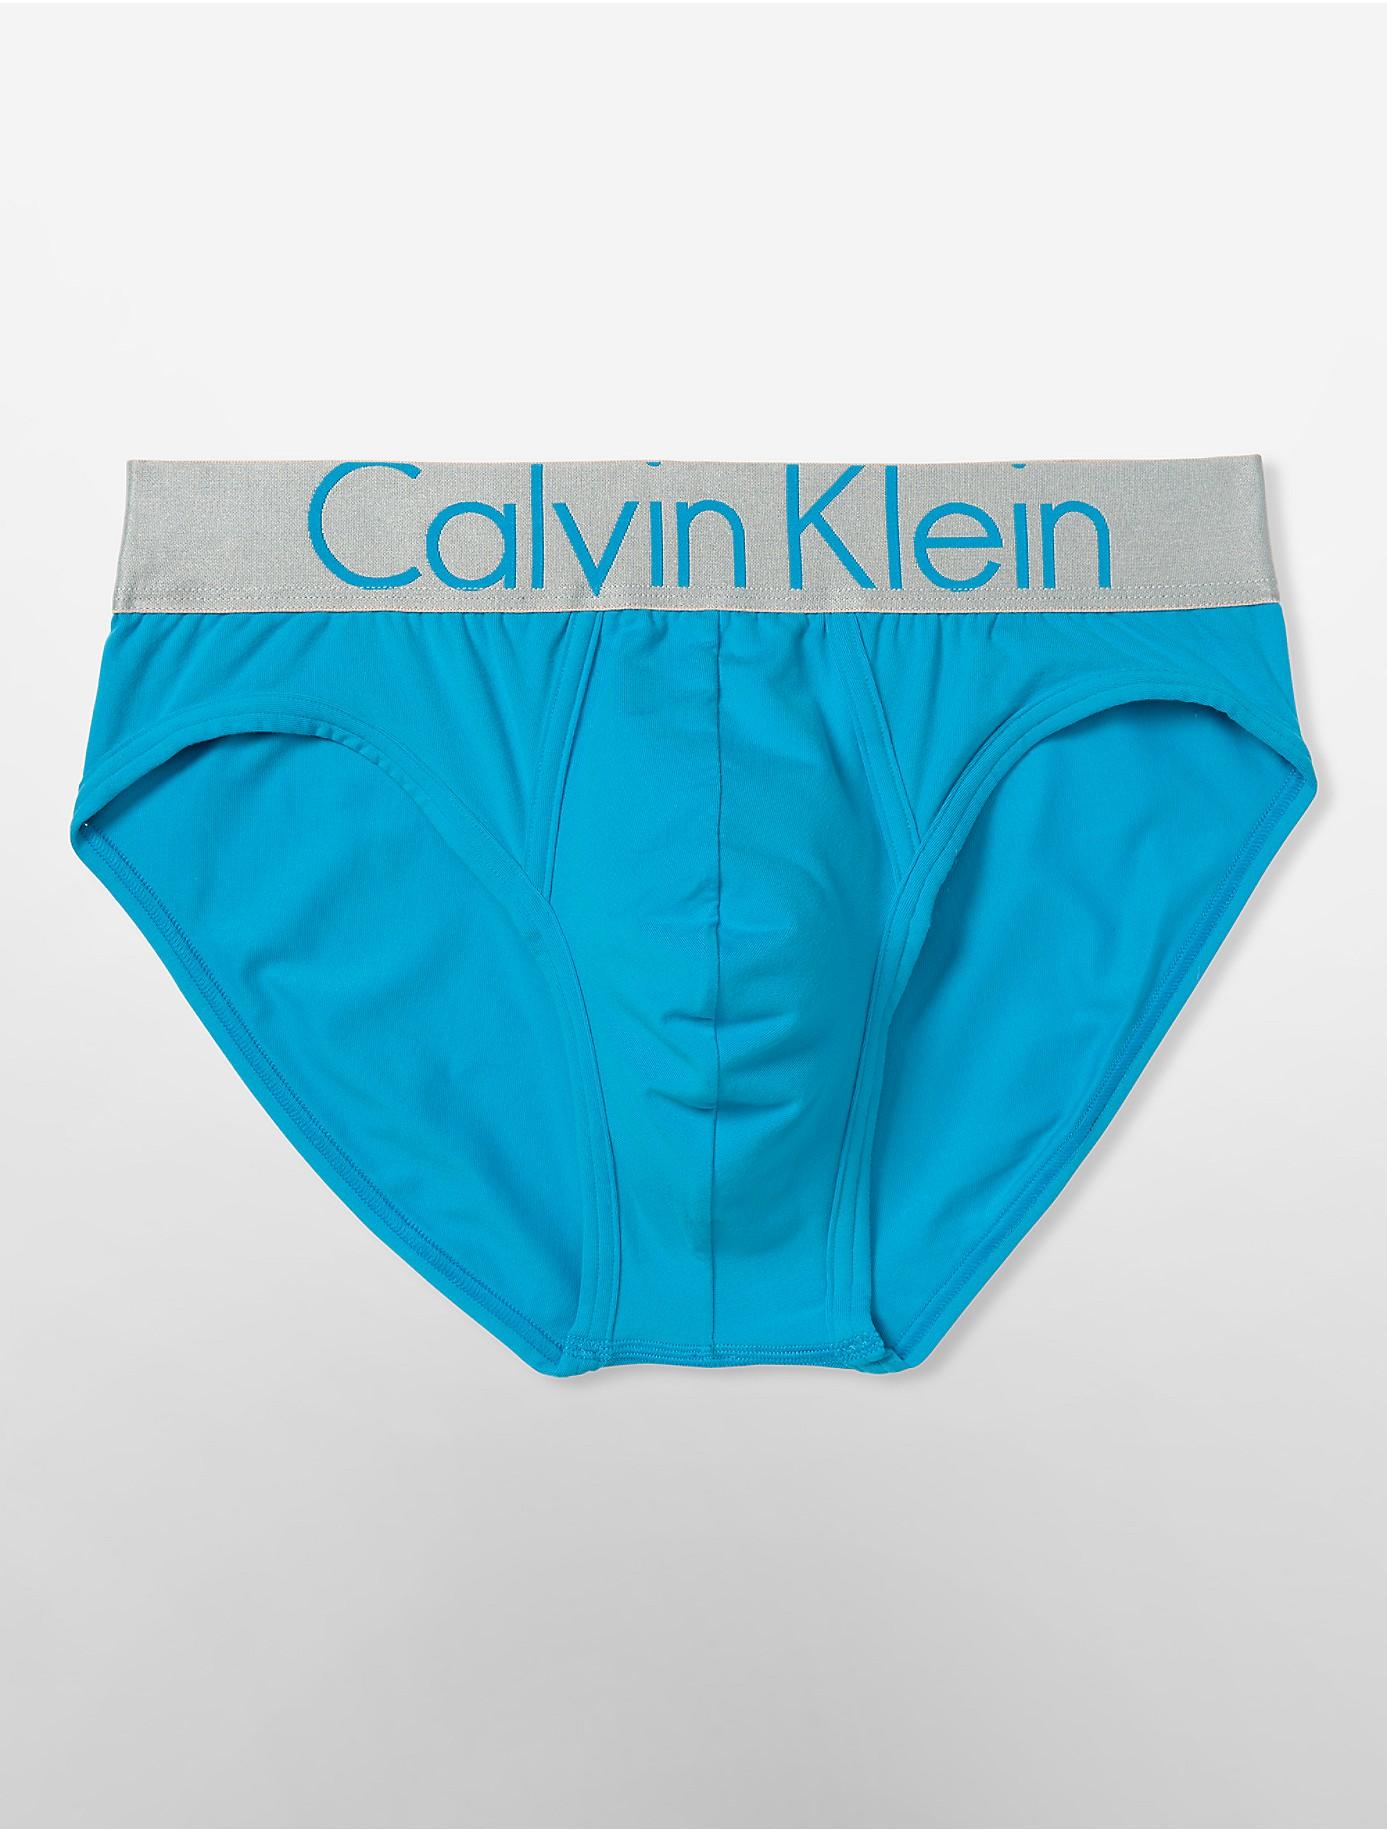 Lyst - Calvin Klein Steel Micro Hip Briefs in Blue for Men